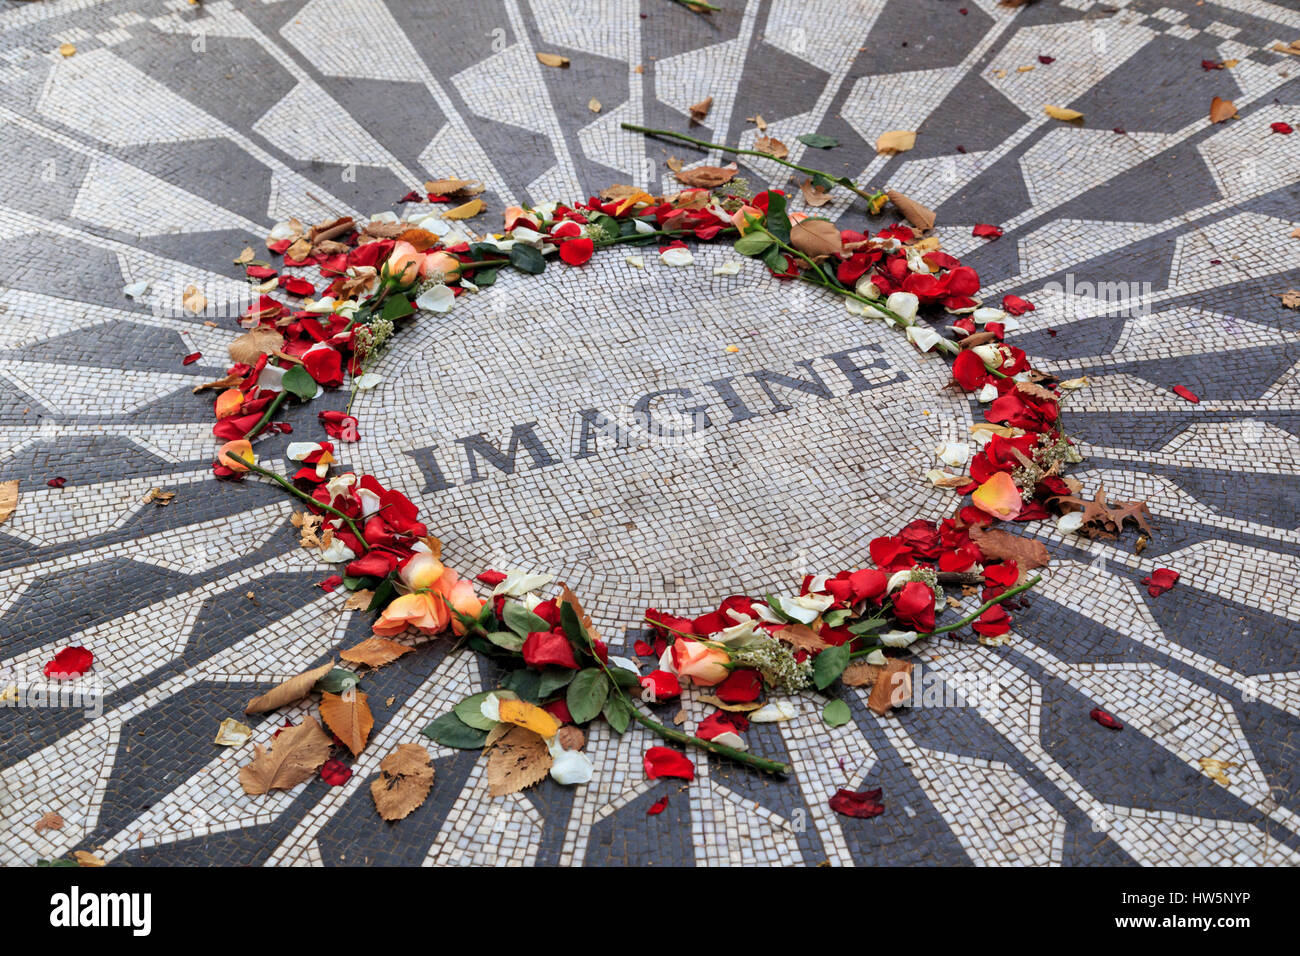 USA, New York, Manhattan, Central Park, champs de fraises, imaginez Mosaic Banque D'Images